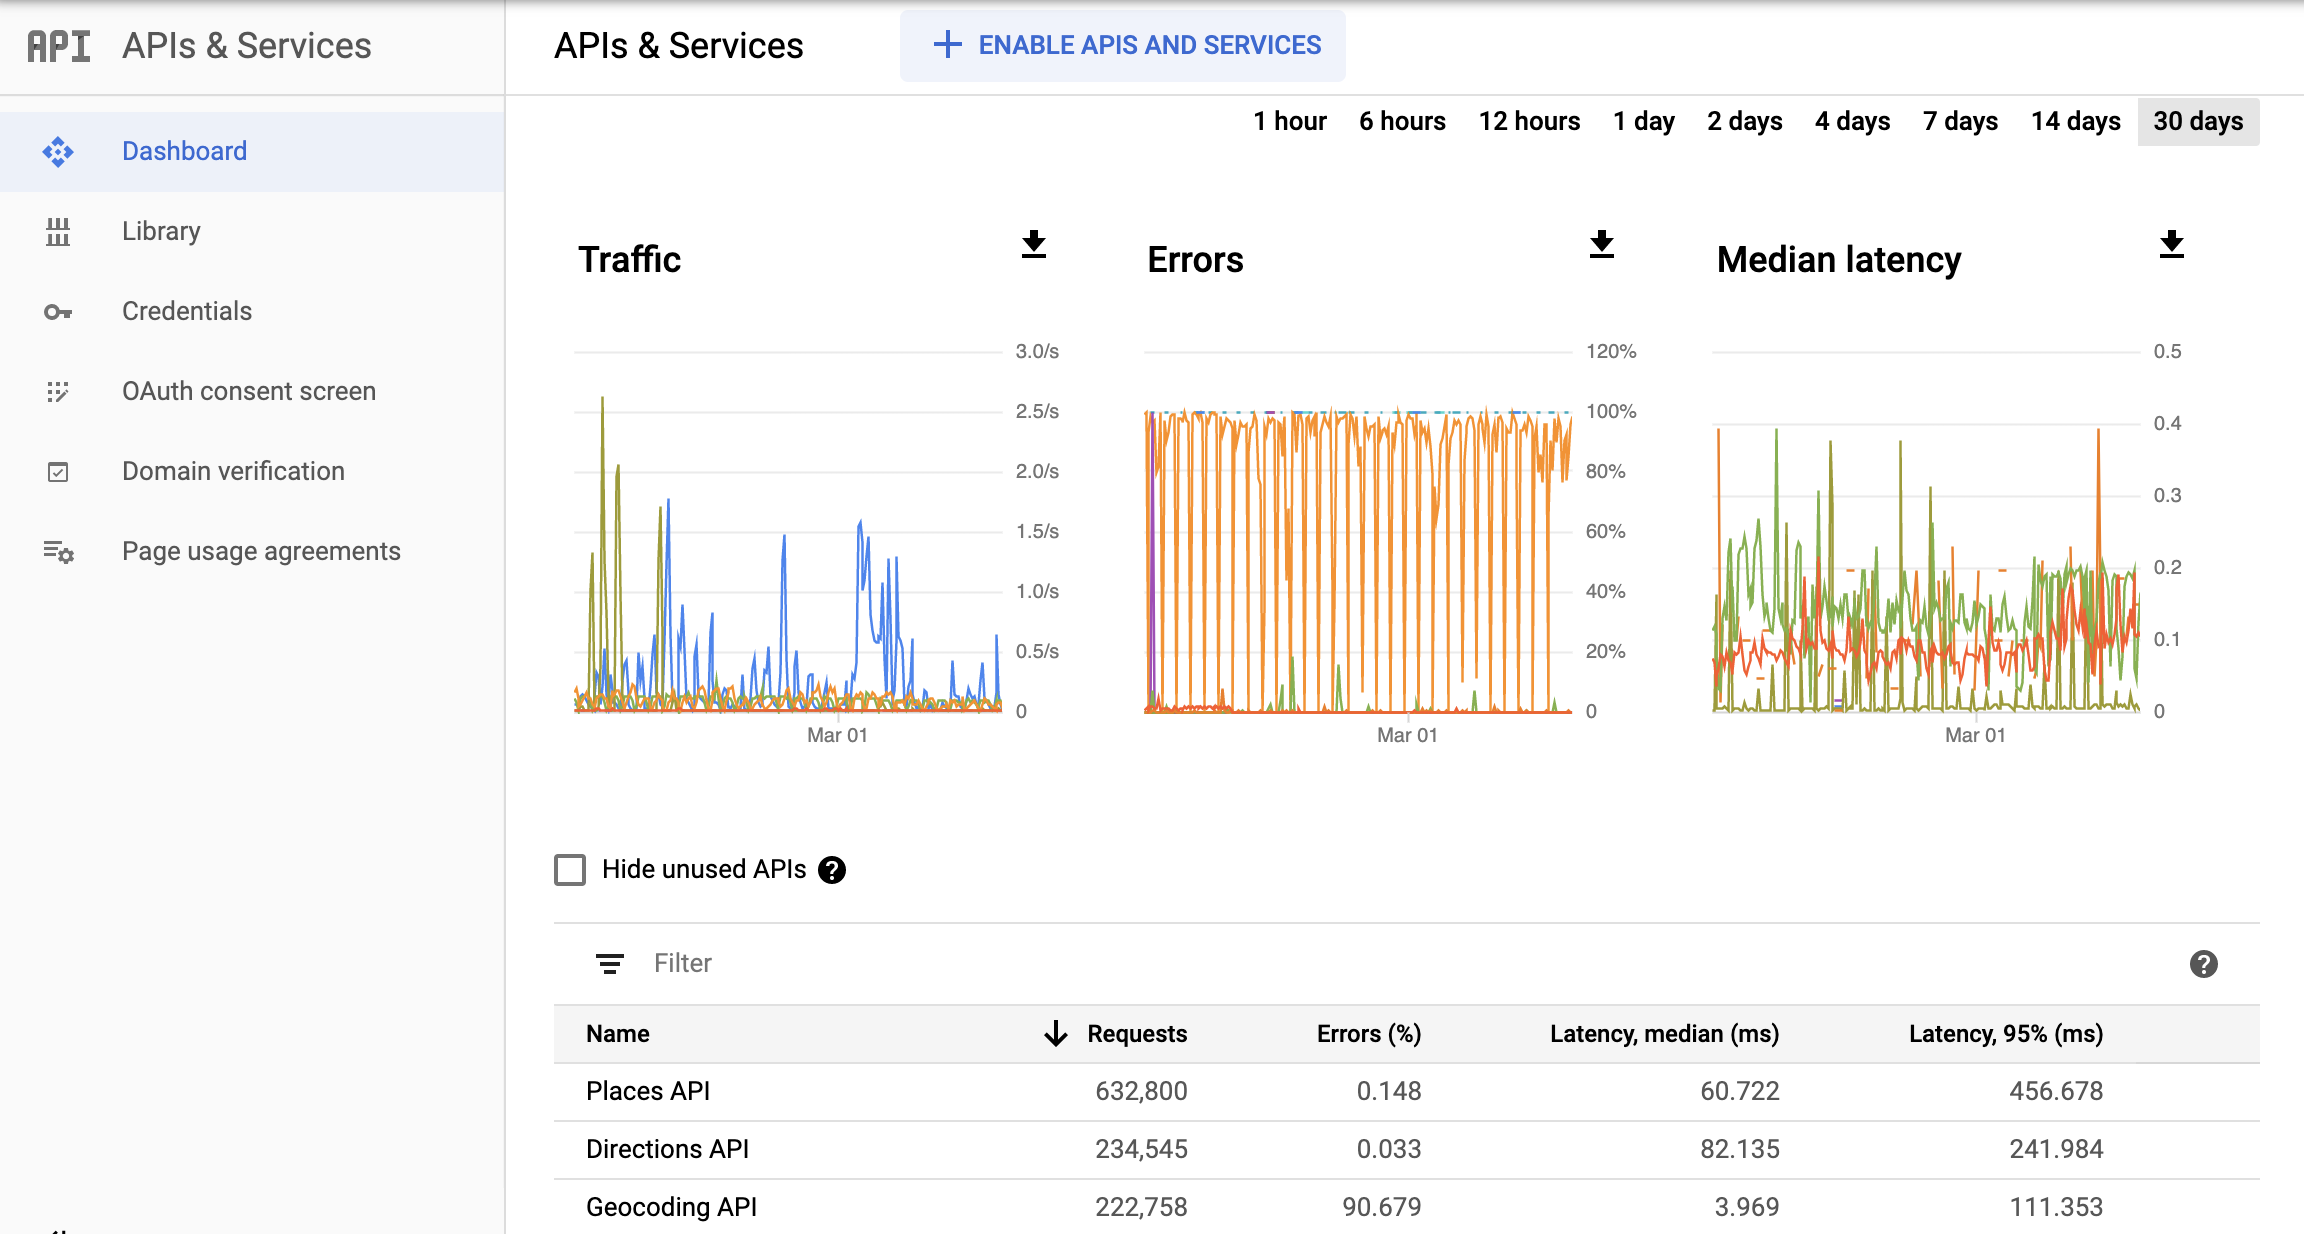 Screenshot halaman API Monitoring di Konsol Google Cloud, yang menampilkan dasbor laporan APIs & Services. Laporan ini menampilkan diagram terpisah untuk Traffic, Error, dan Median Latency. Diagram ini
  dapat menampilkan data dari rentang waktu satu jam hingga 30 hari.